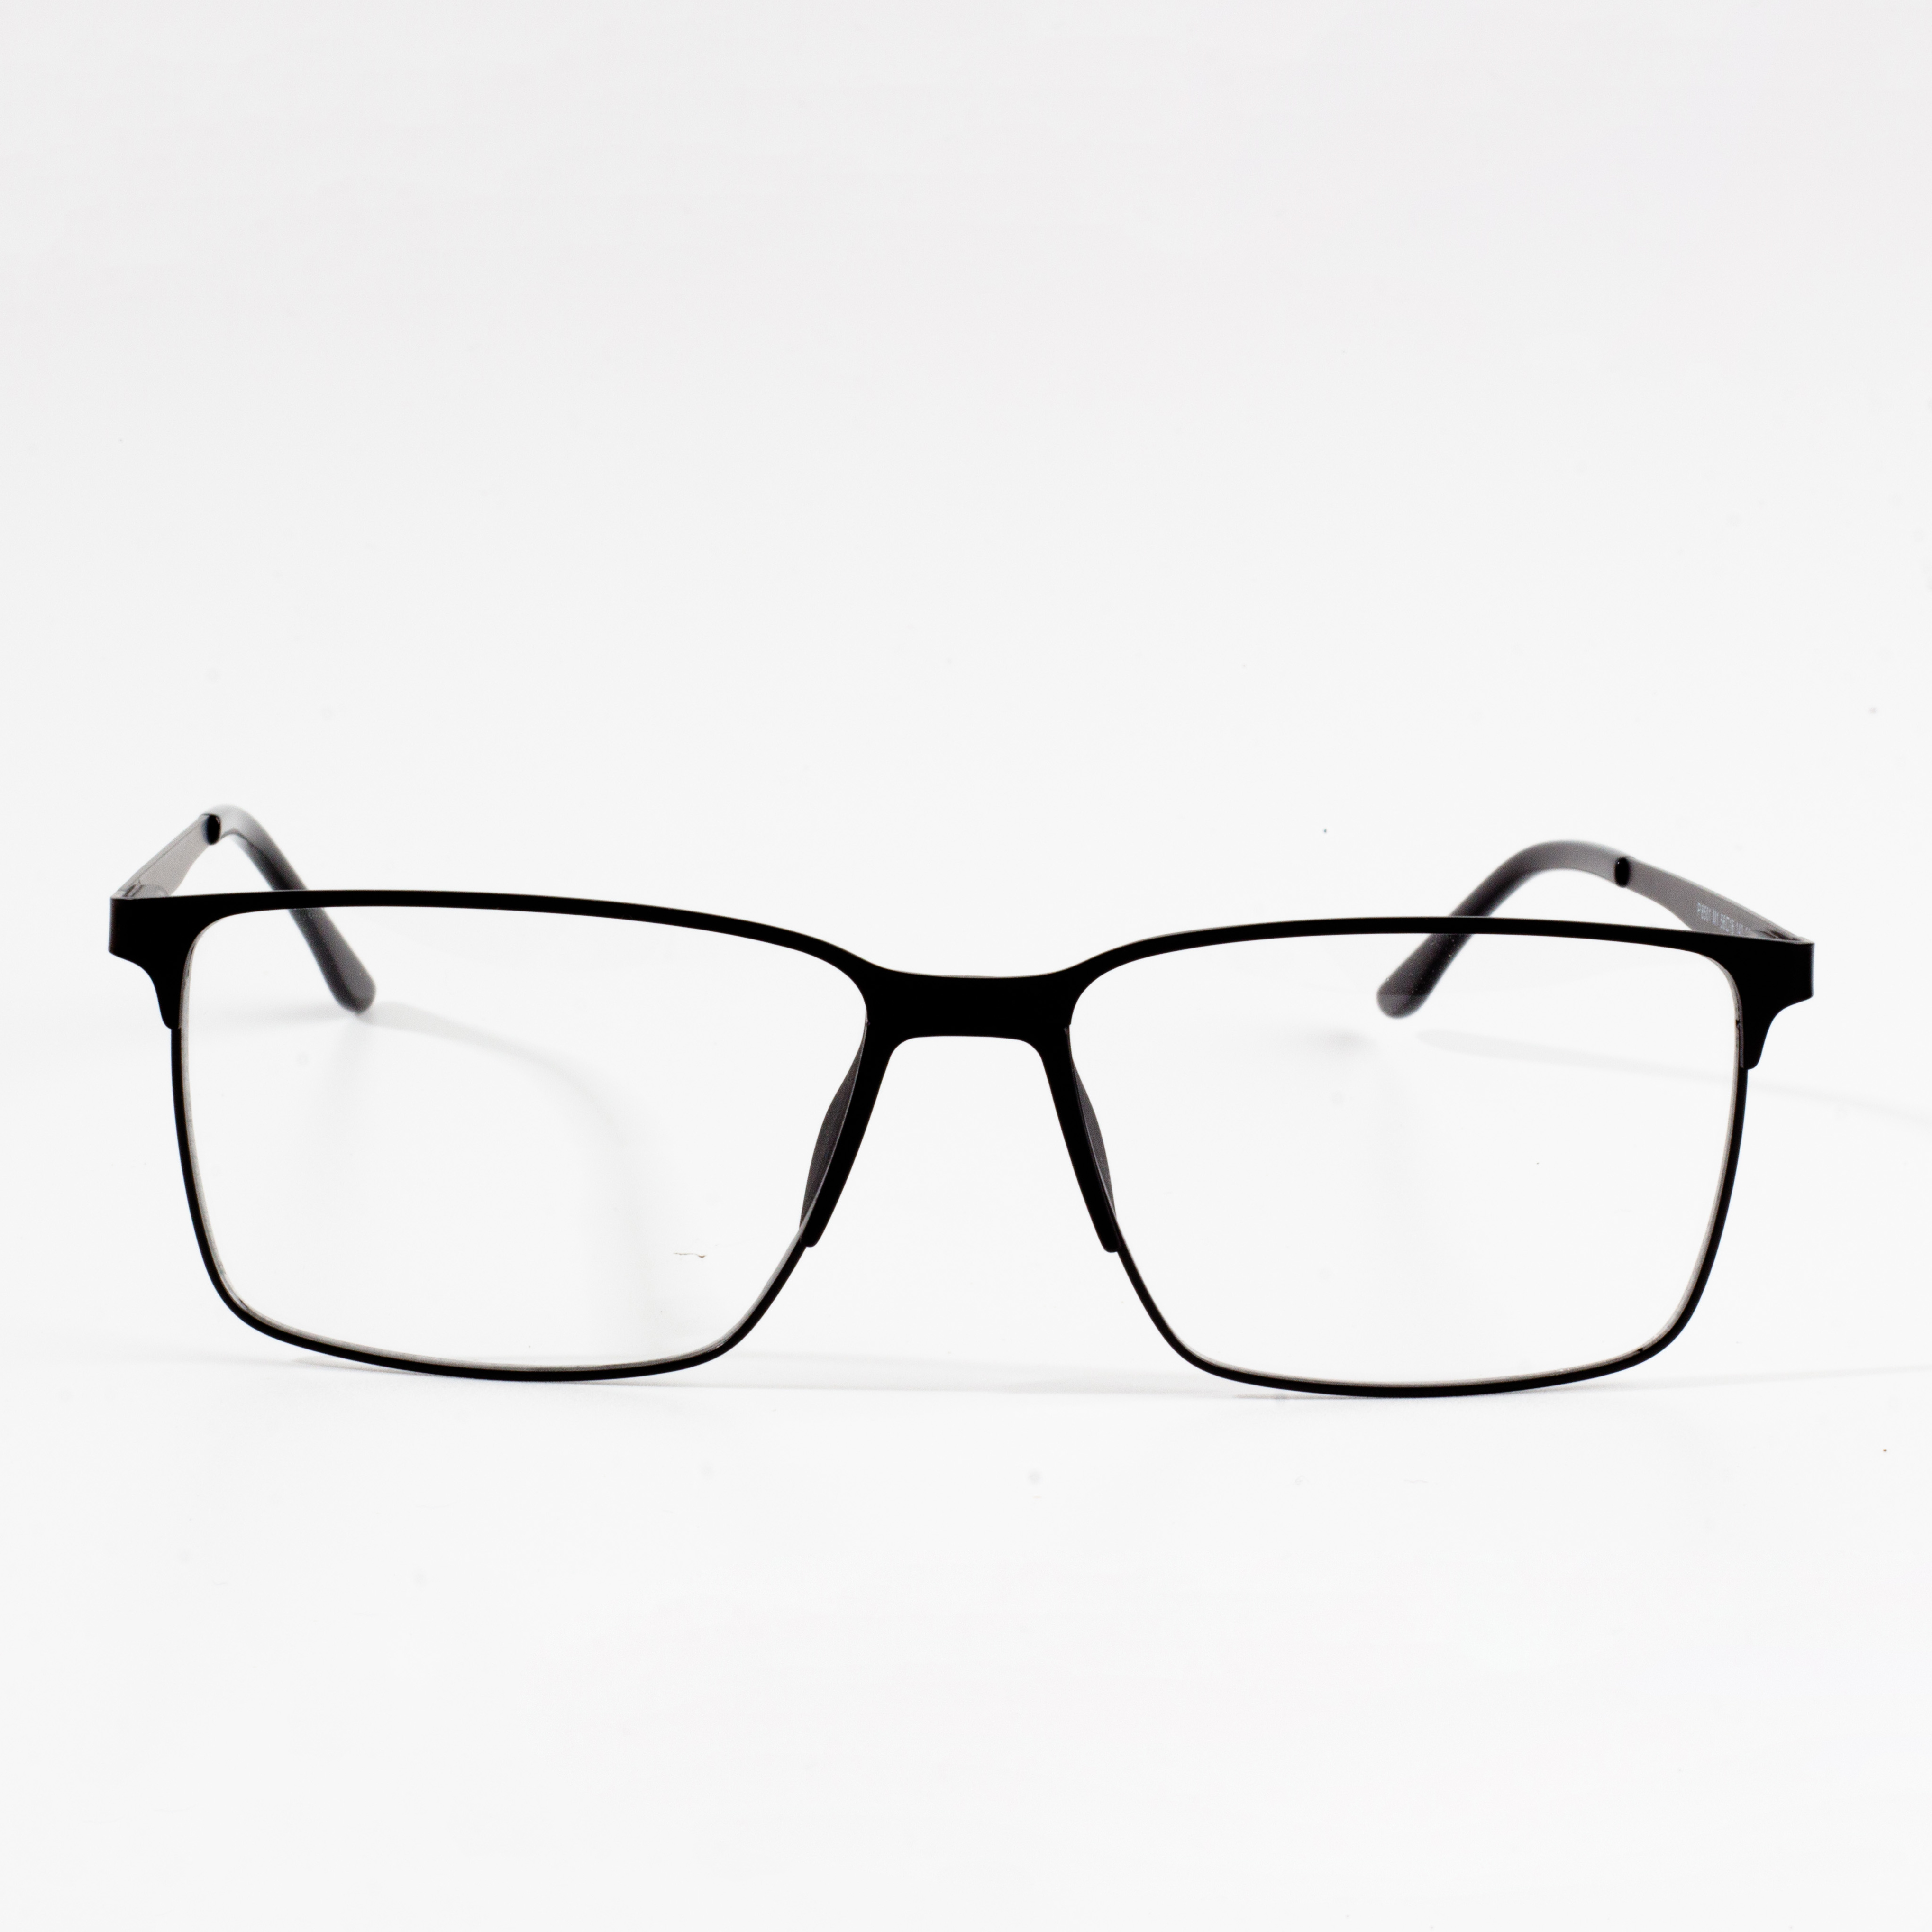 dizainerių sukurti akinių rėmeliai vyrams